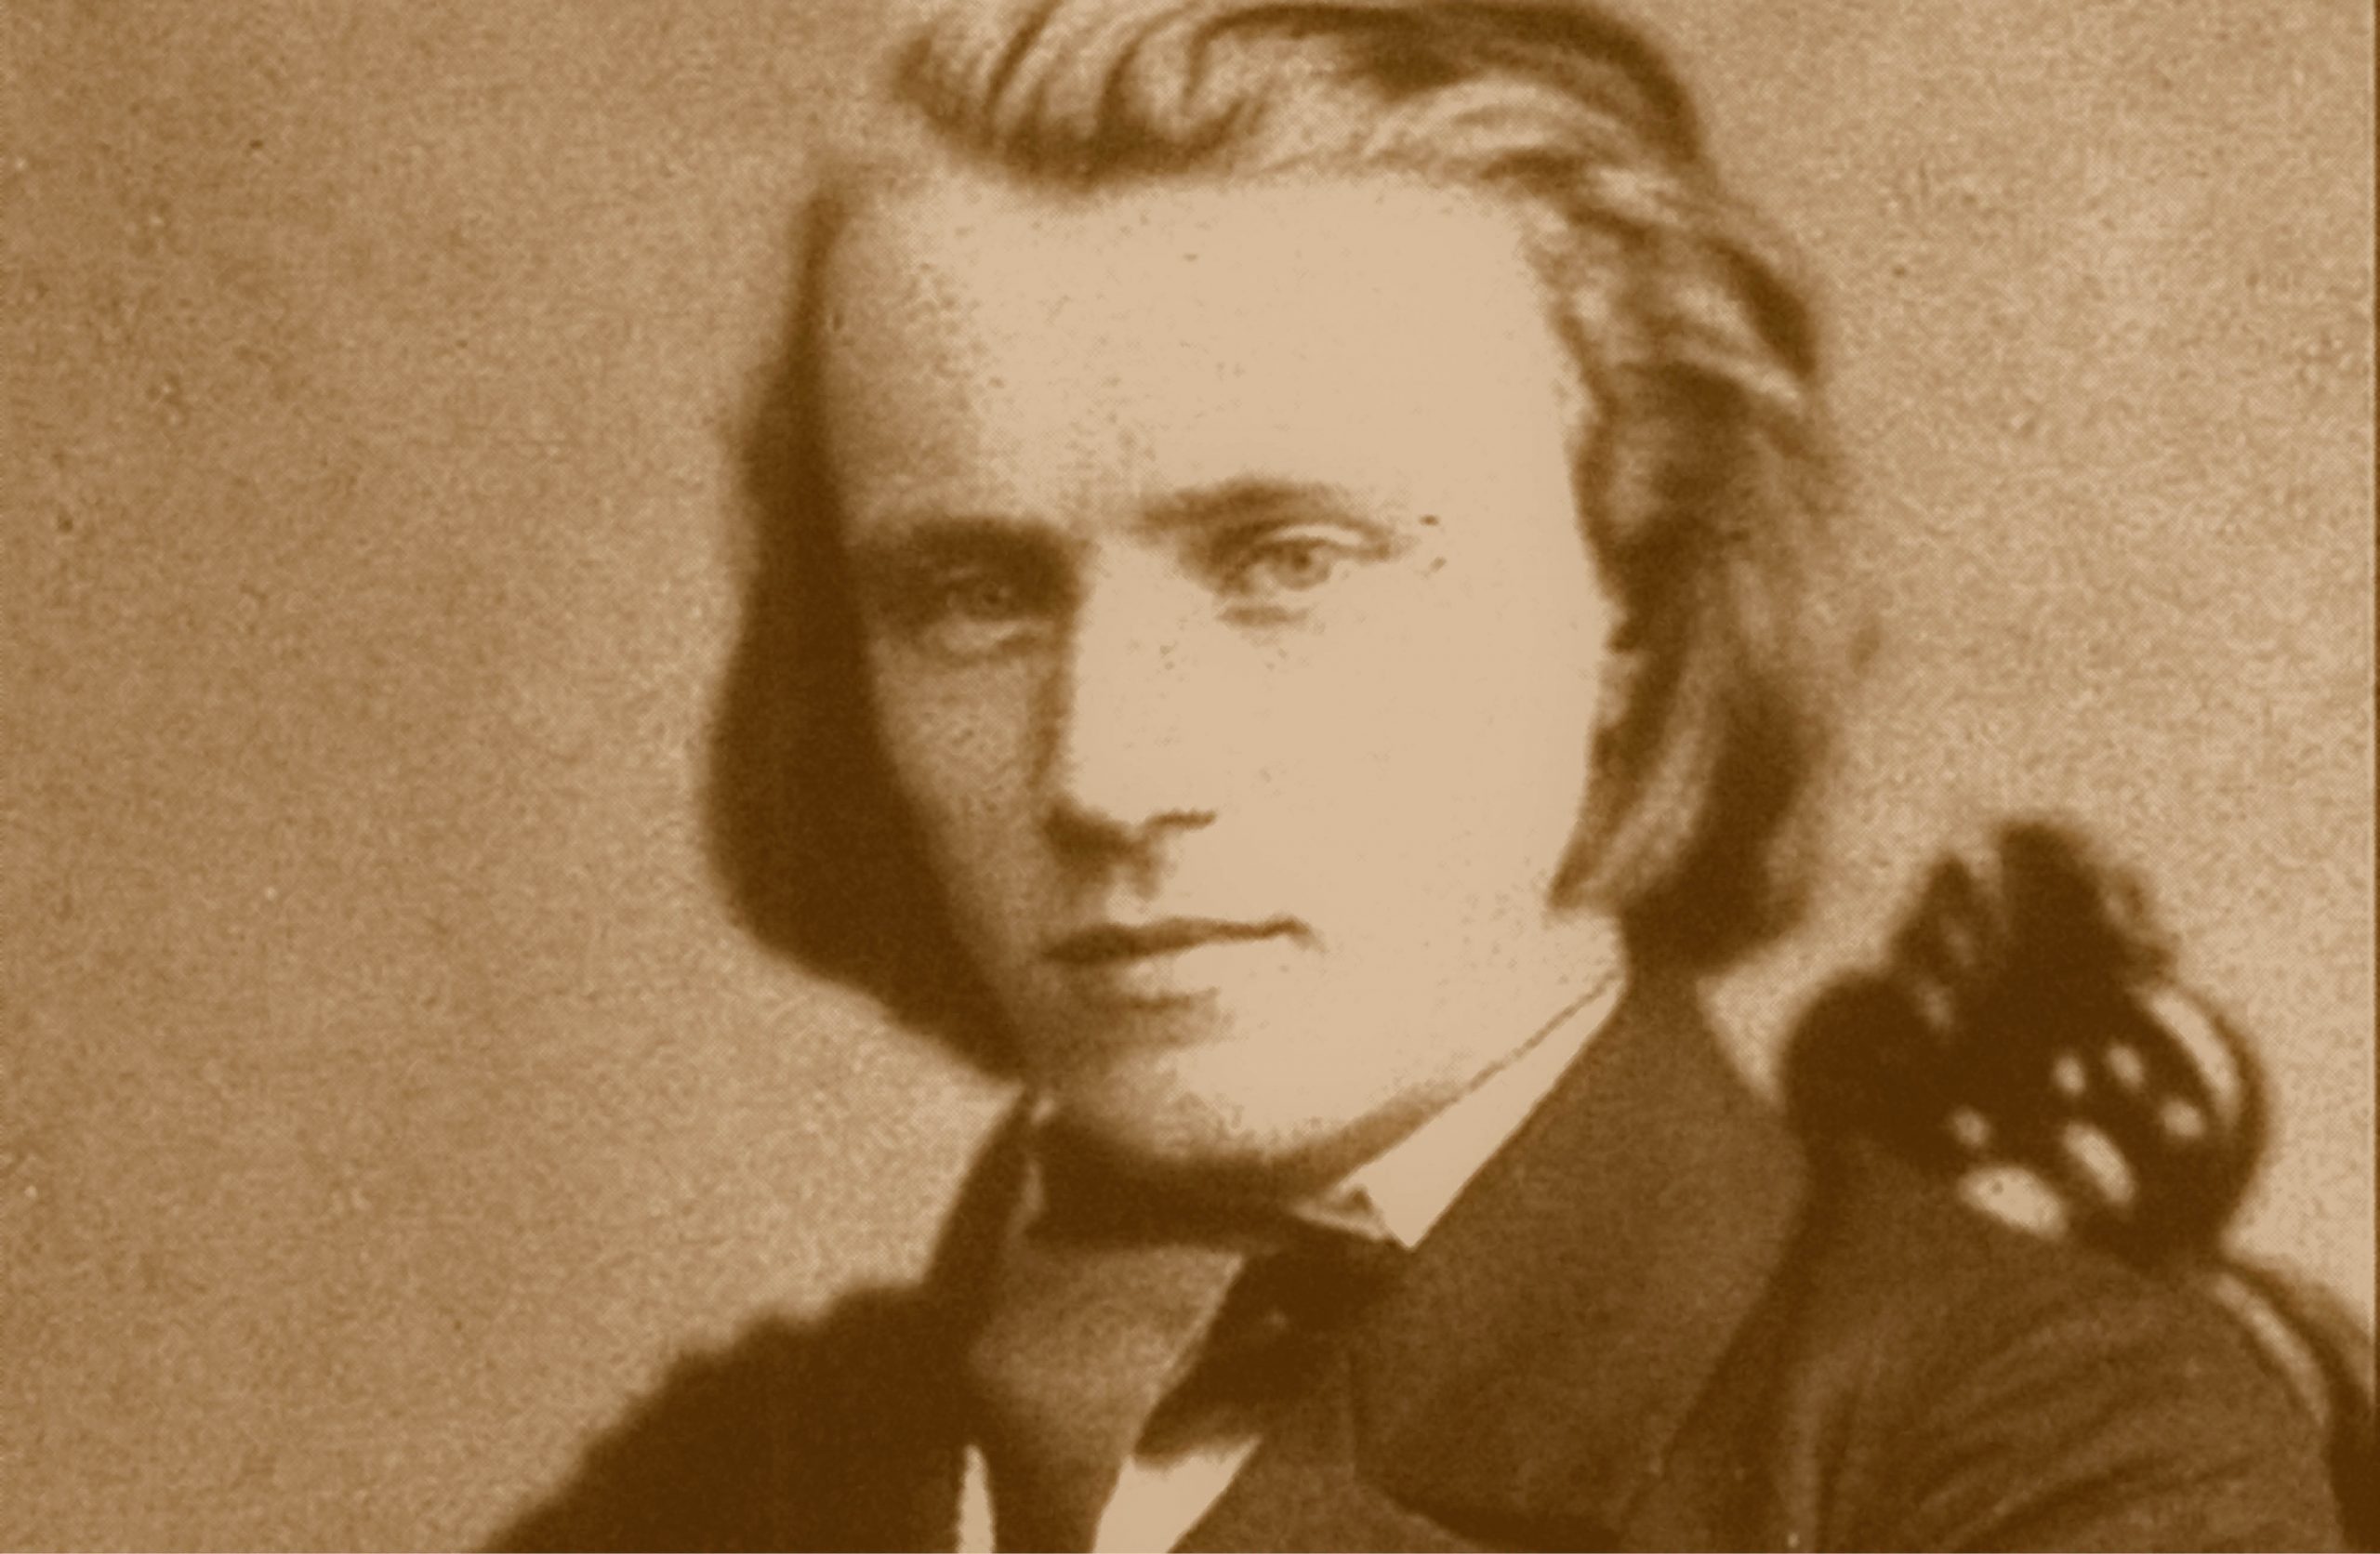 Porträtt av en ung Johannes Brahms, med en pageliknande frisyr och skägglös haka.